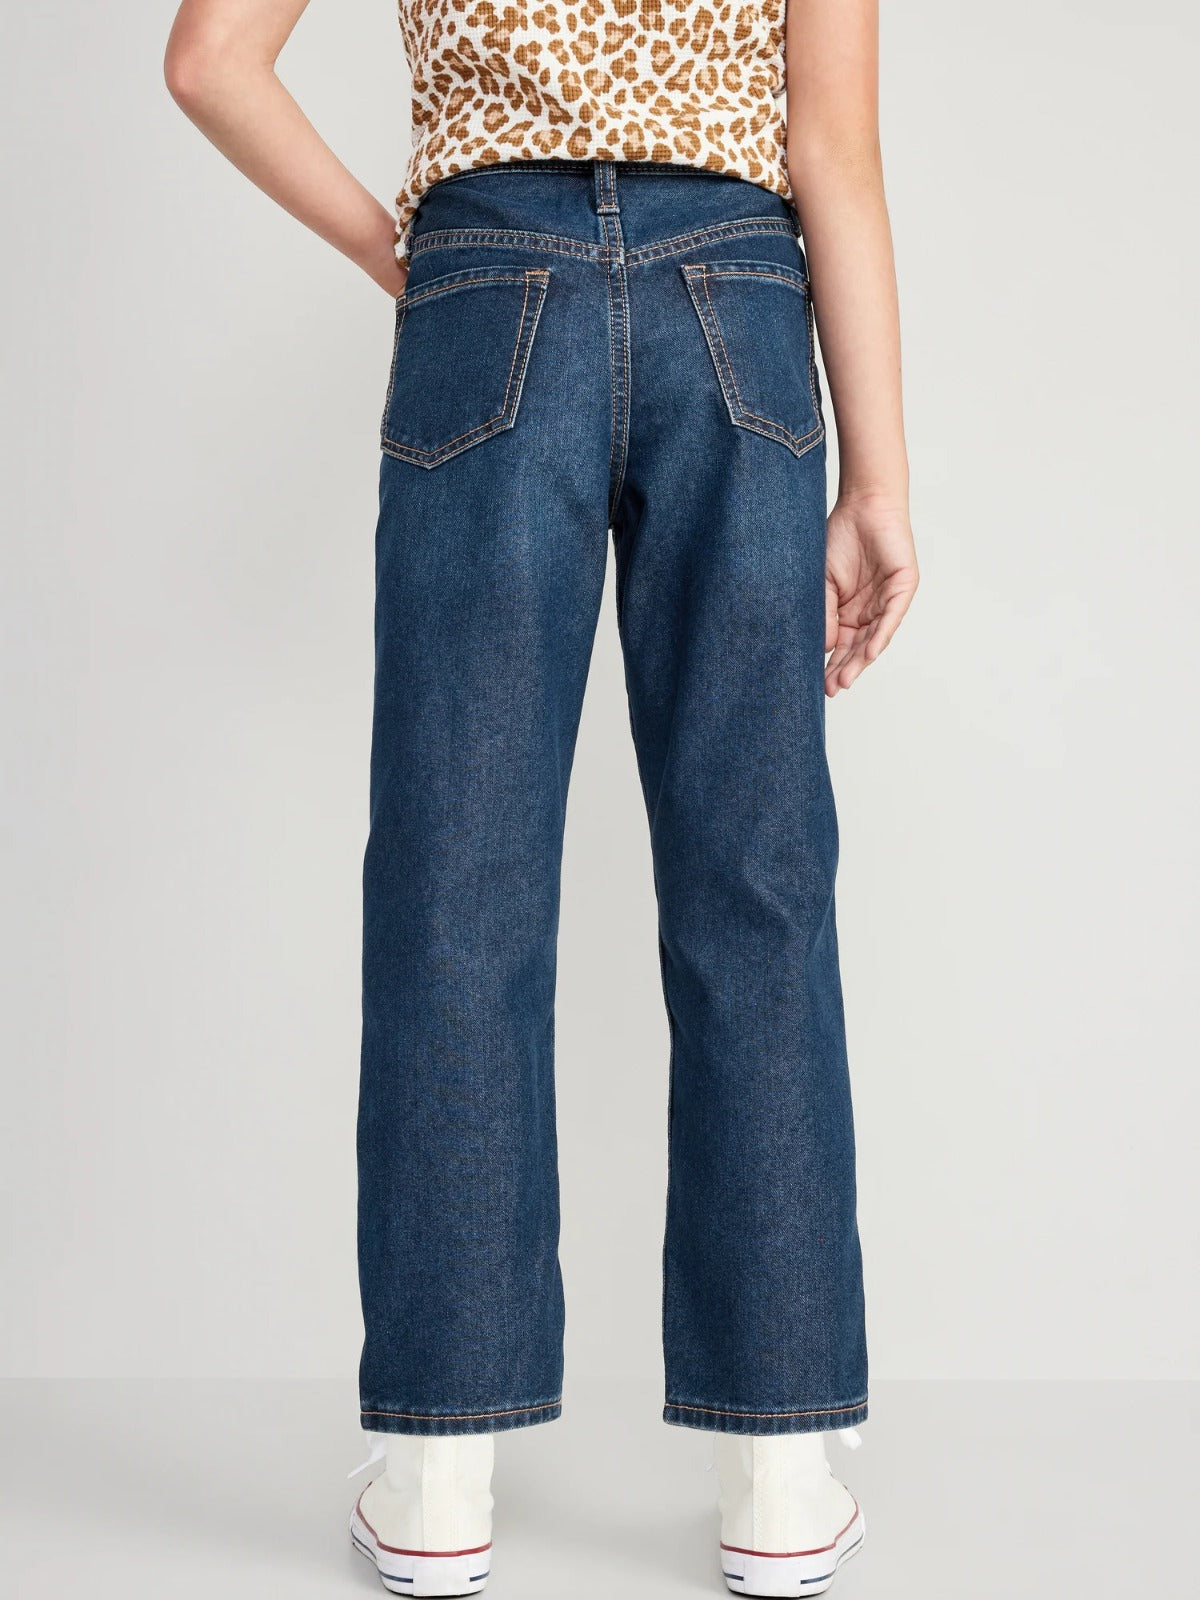 Pantalon Jeans ancho Old navy Niña azul oscuro.753591-00-1 – Kima